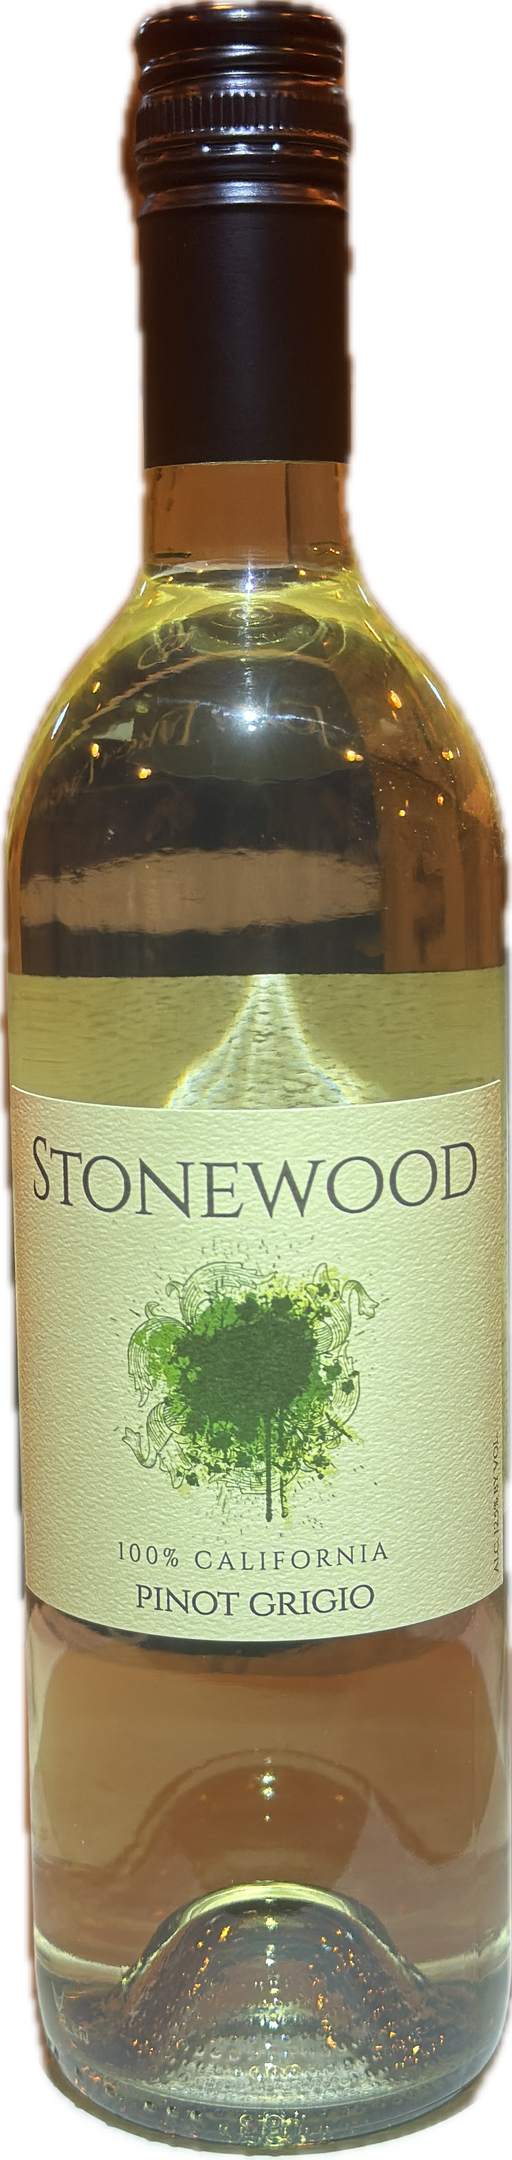 Stonewood Pinot grigio 20NV - VineChain